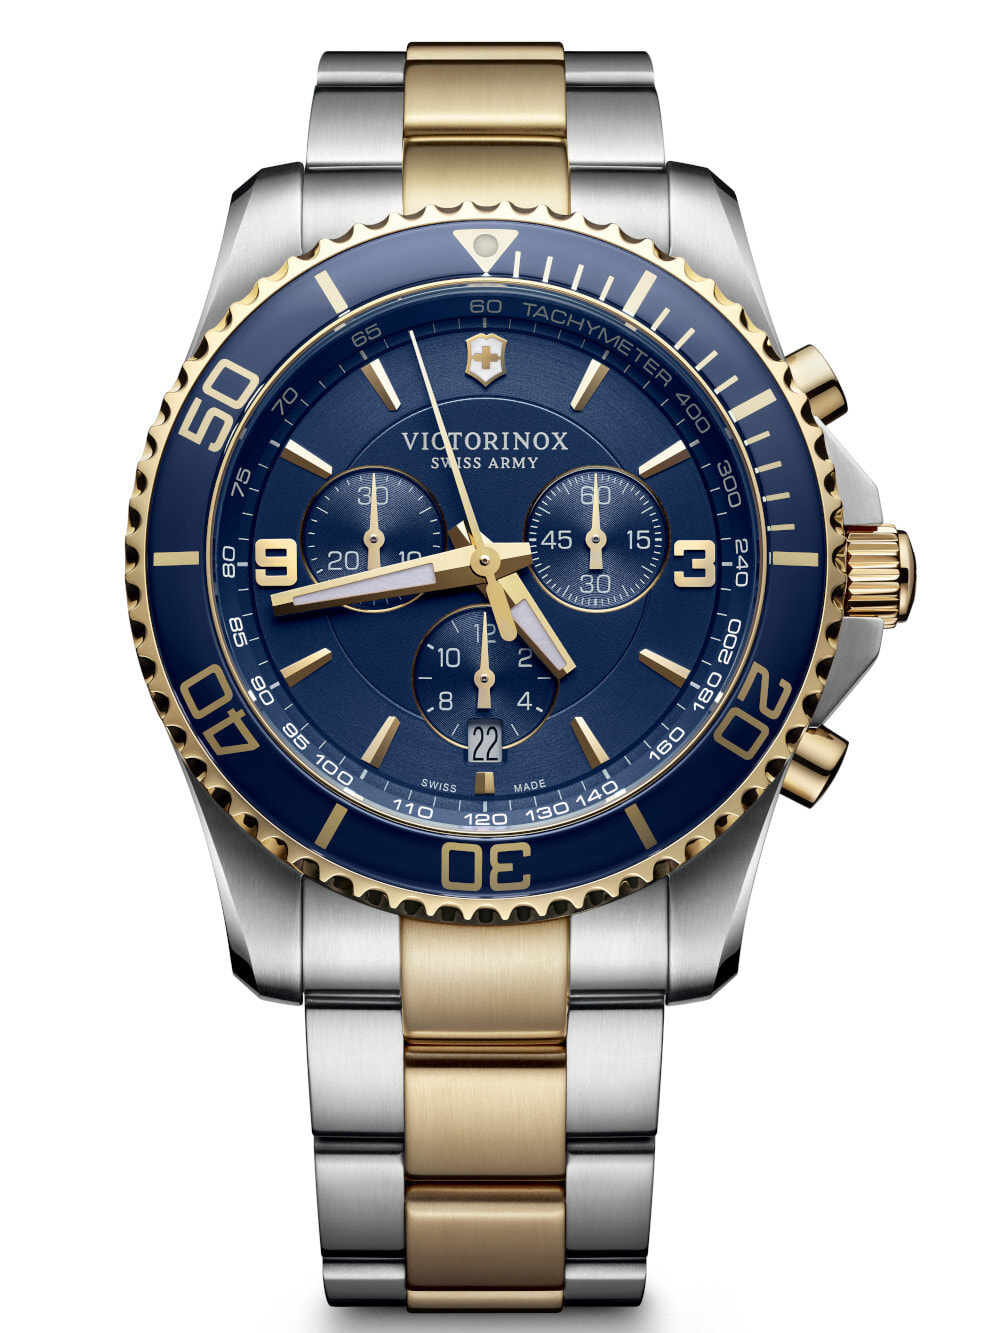 Мужские наручные часы с серебристым браслетом Victorinox 241835 I.N.O.X. Automatic Mens 43mm 20ATM